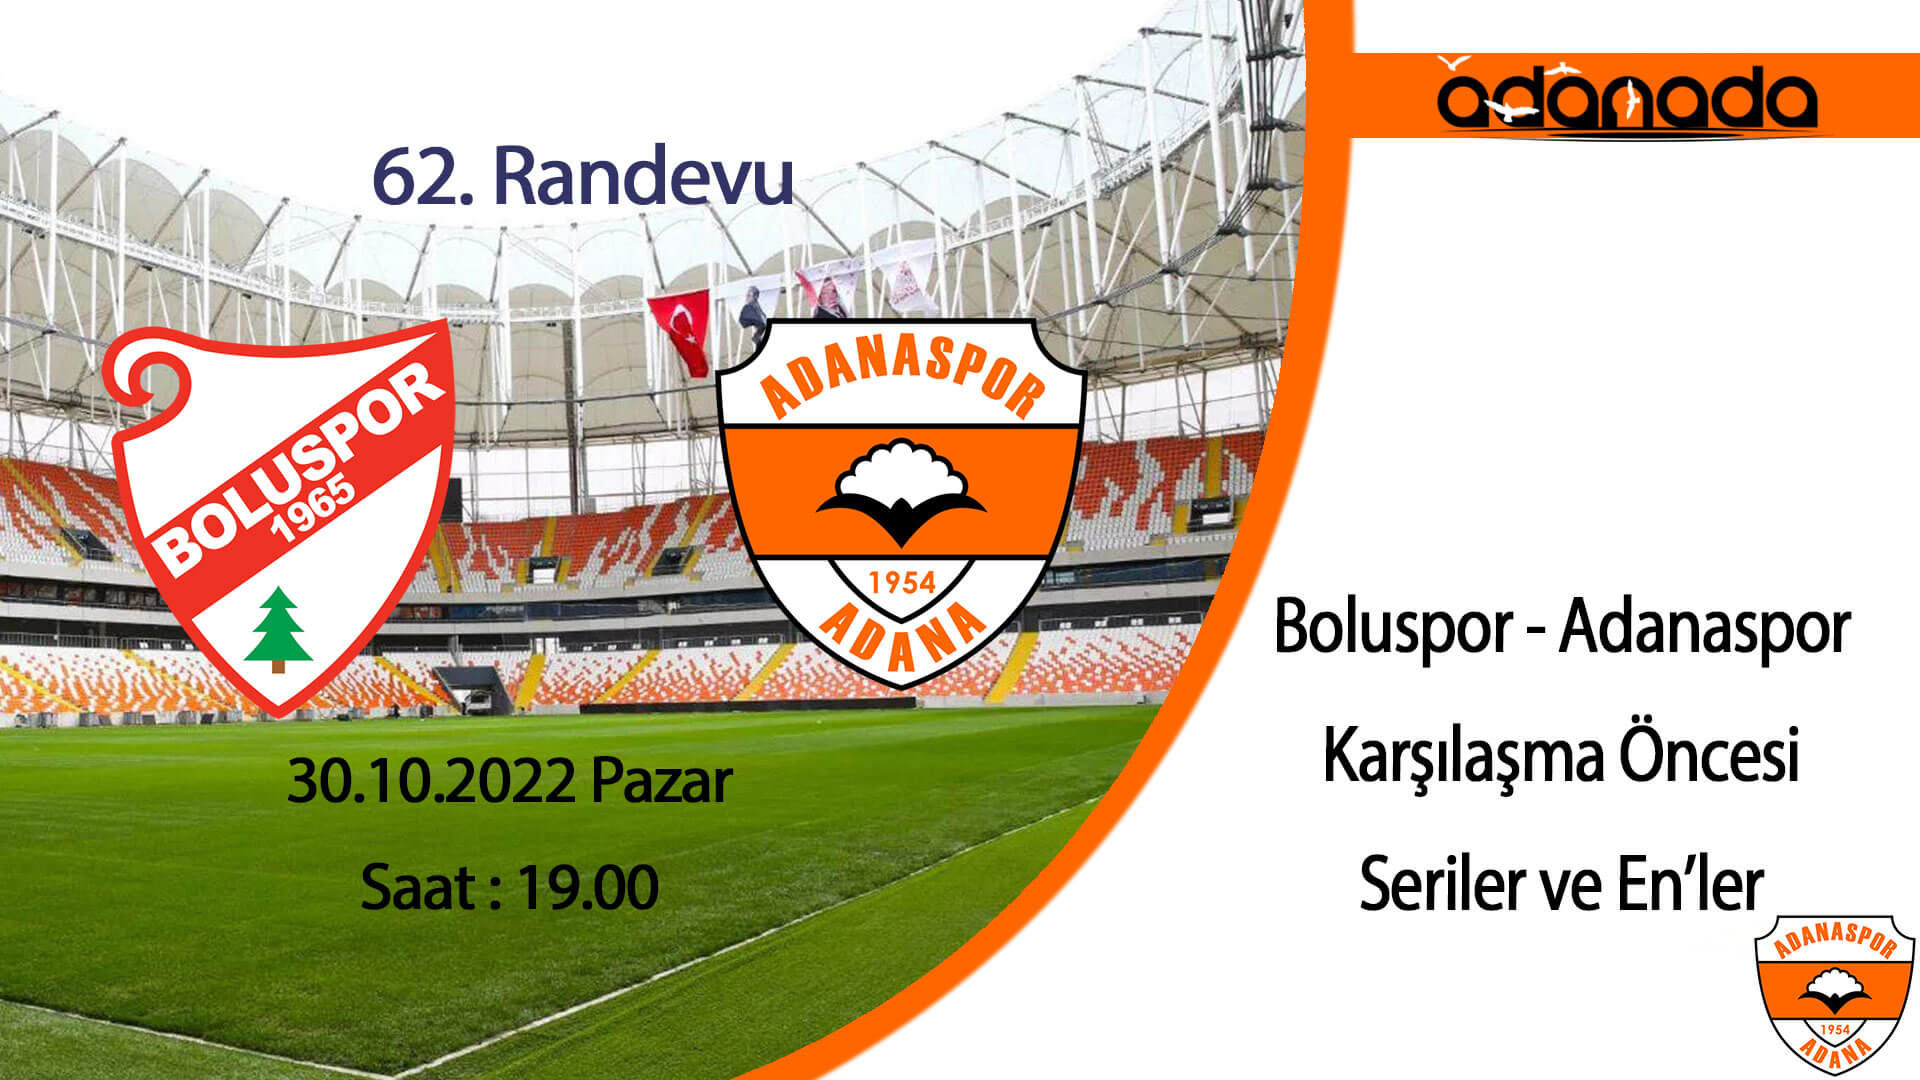 Boluspor – Adanaspor 62. Randevuda